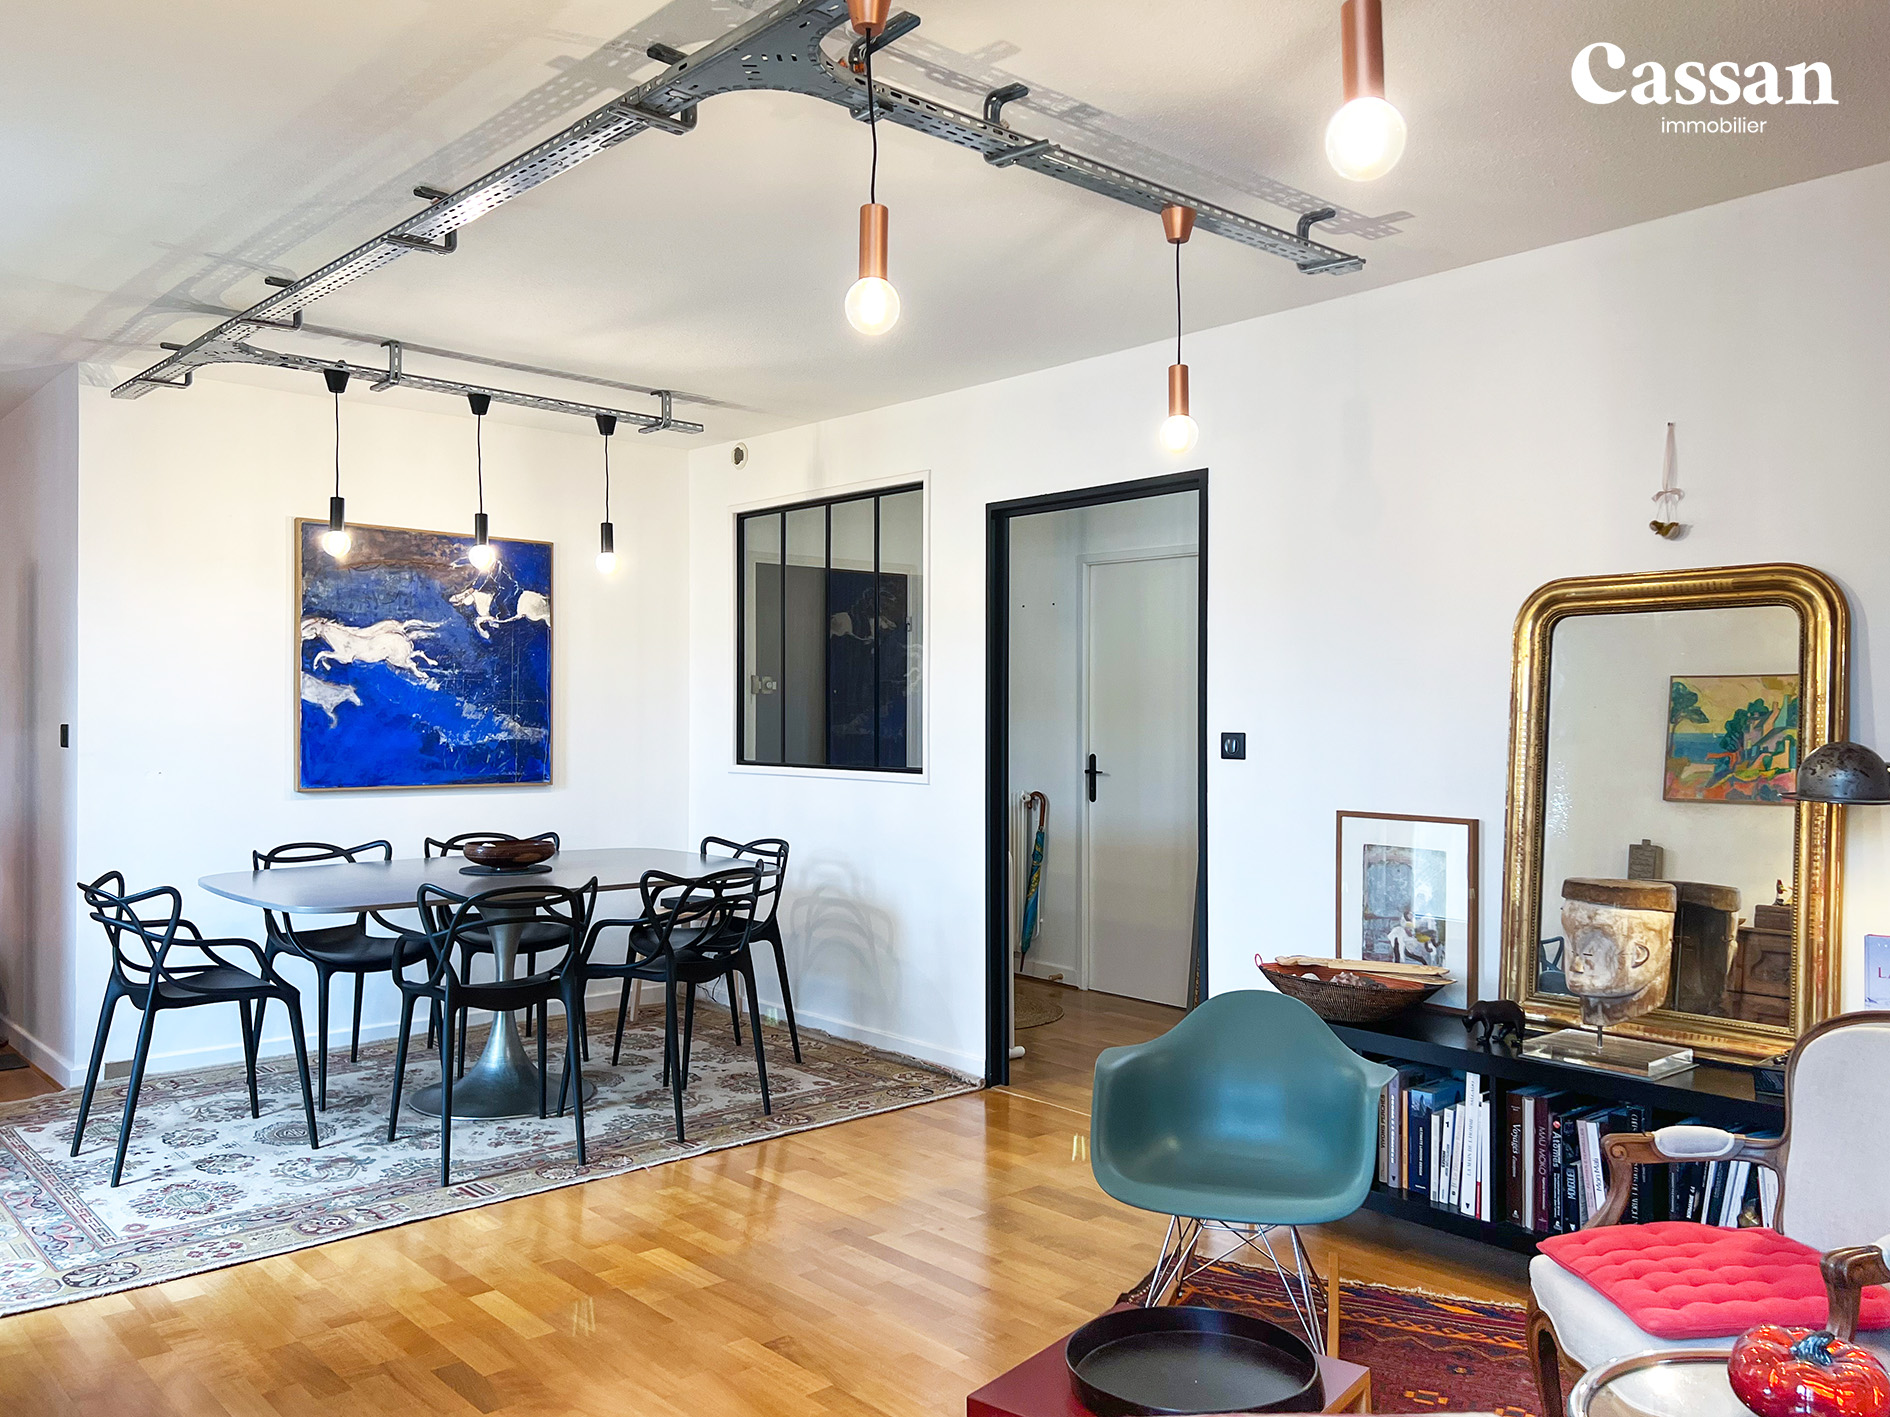 Salon salle à manger appartement à vendre Aurillac Cassan immobilier